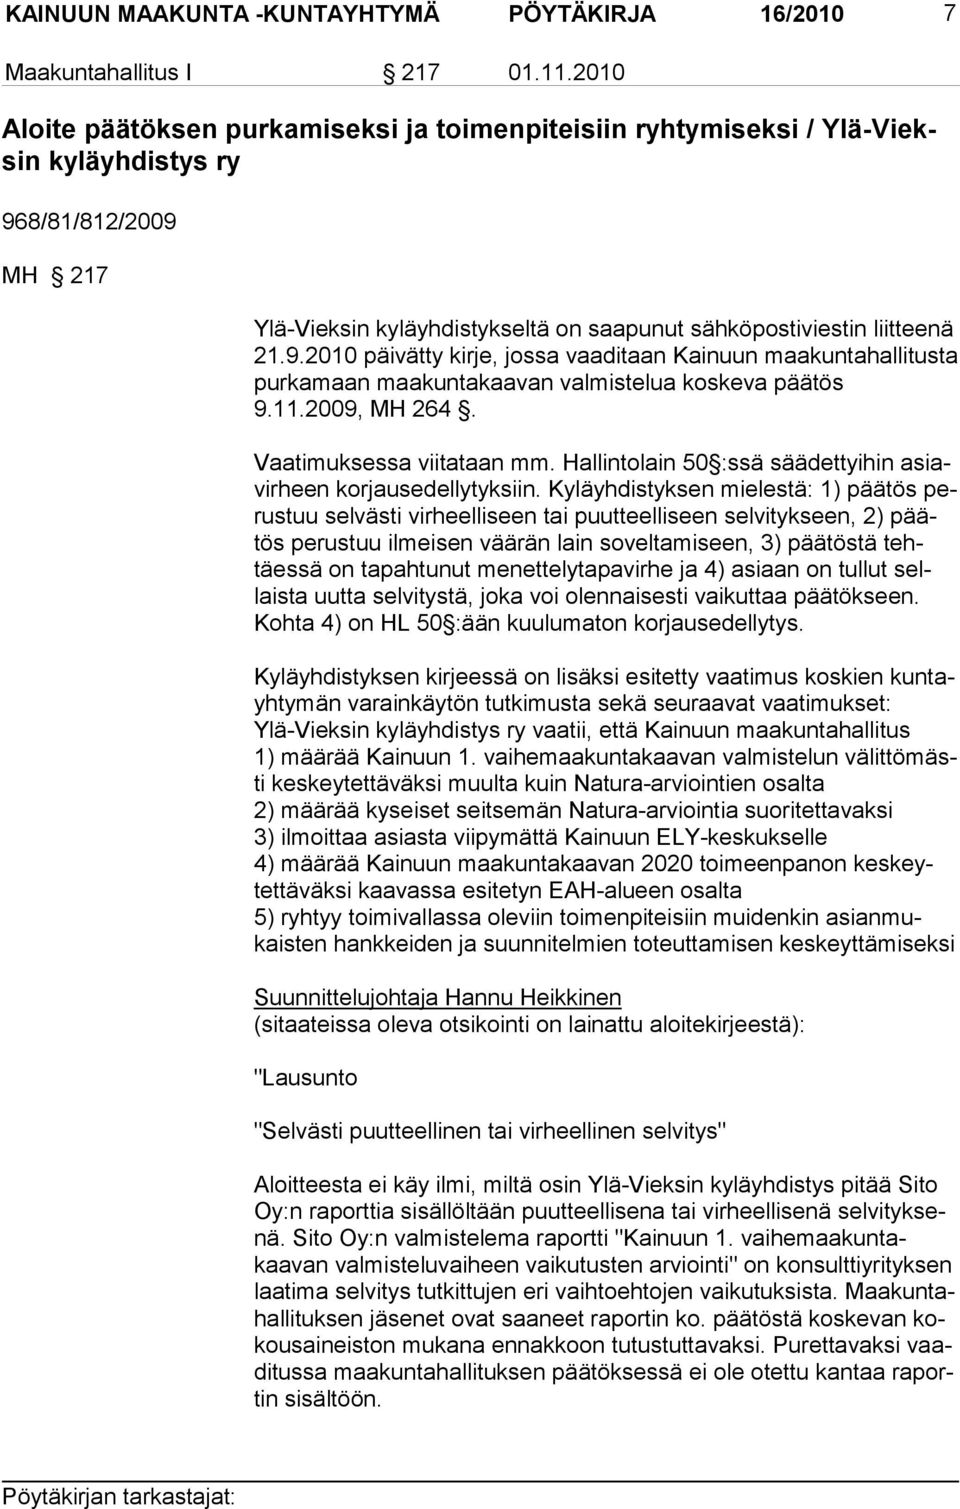 8/81/812/2009 MH 217 Ylä-Vieksin kyläyhdistykseltä on saapunut sähköpostiviestin liitteenä 21.9.2010 päivätty kirje, jossa vaaditaan Kainuun maakuntahallitusta purkamaan maakuntakaavan valmistelua kos keva päätös 9.